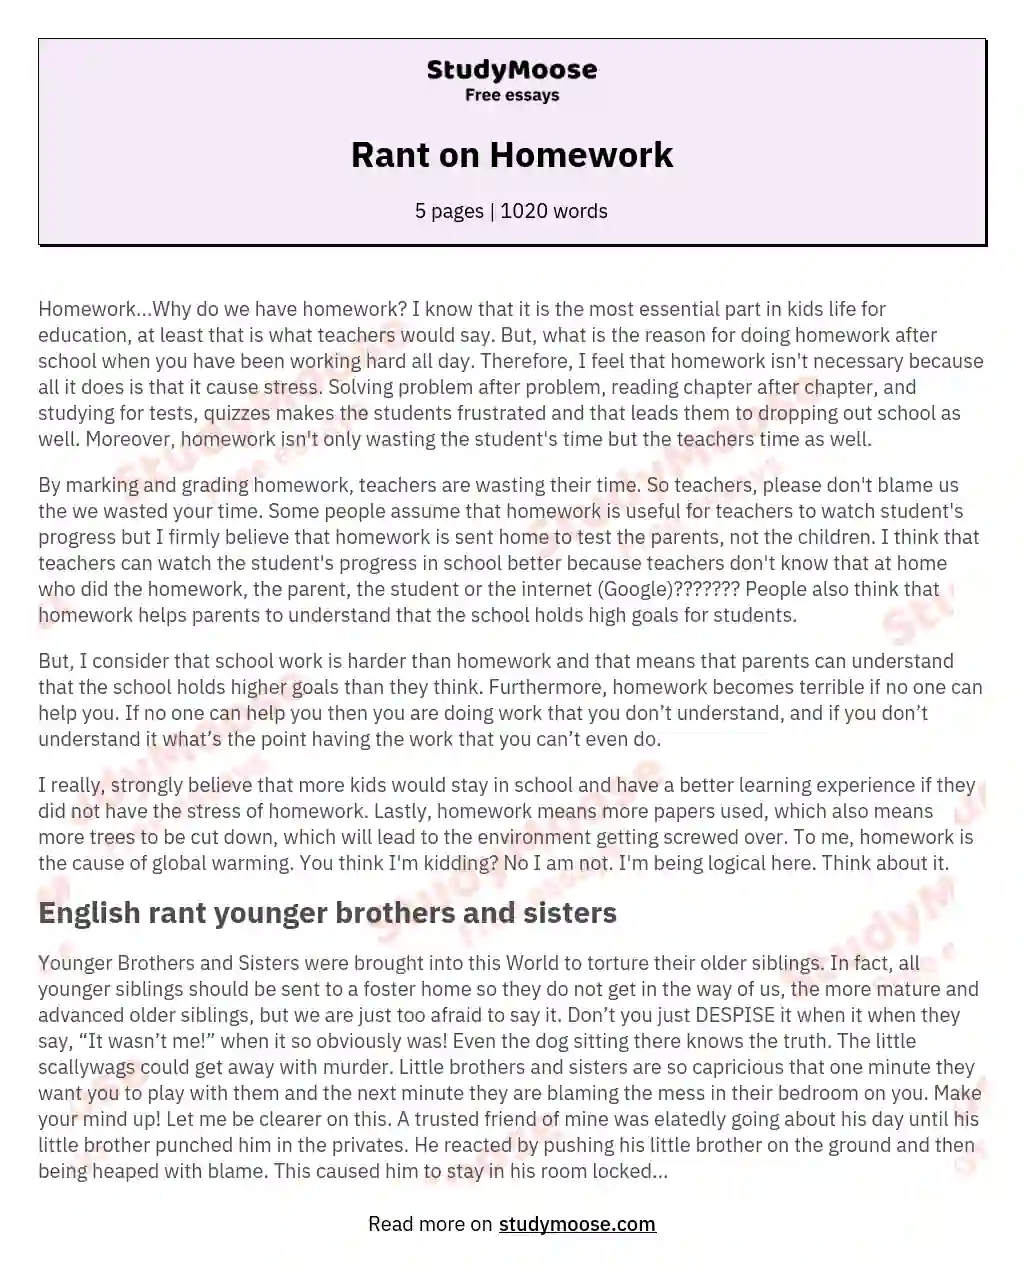 Rant on Homework essay